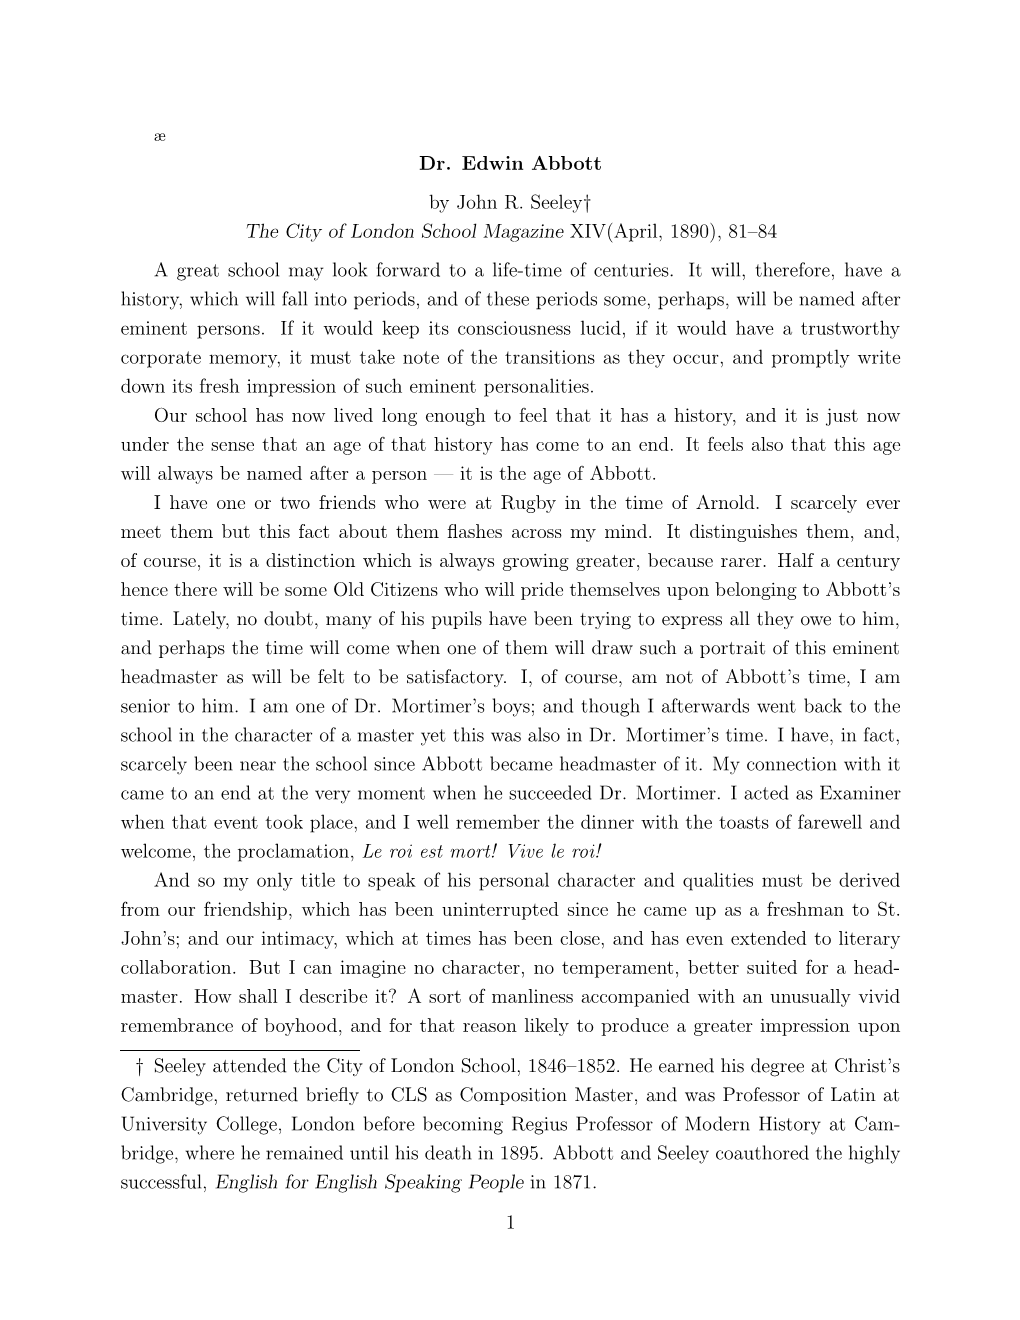 Dr. Edwin Abbott by John R. Seeley† the City of London School